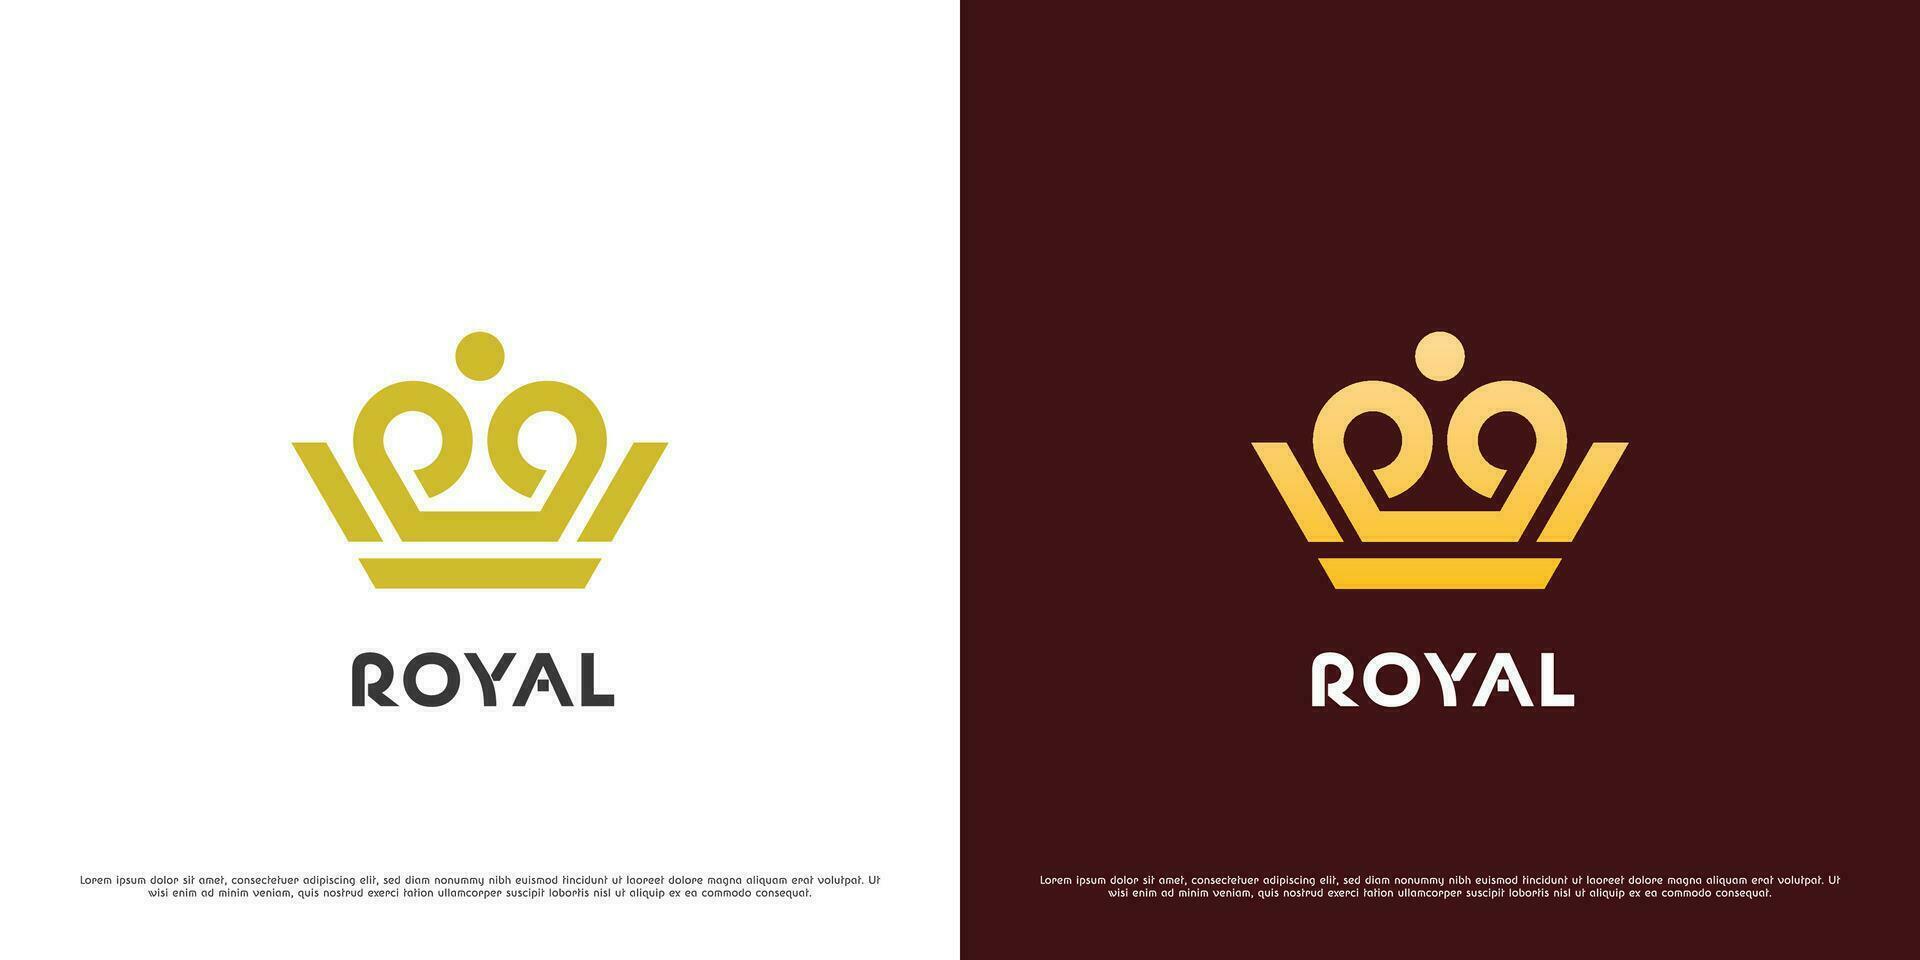 real corona logo diseño ilustración. sencillo geométrico silueta monarca real orgullo Rey reina Príncipe imperial heráldico aristocrático elegante icono. vector